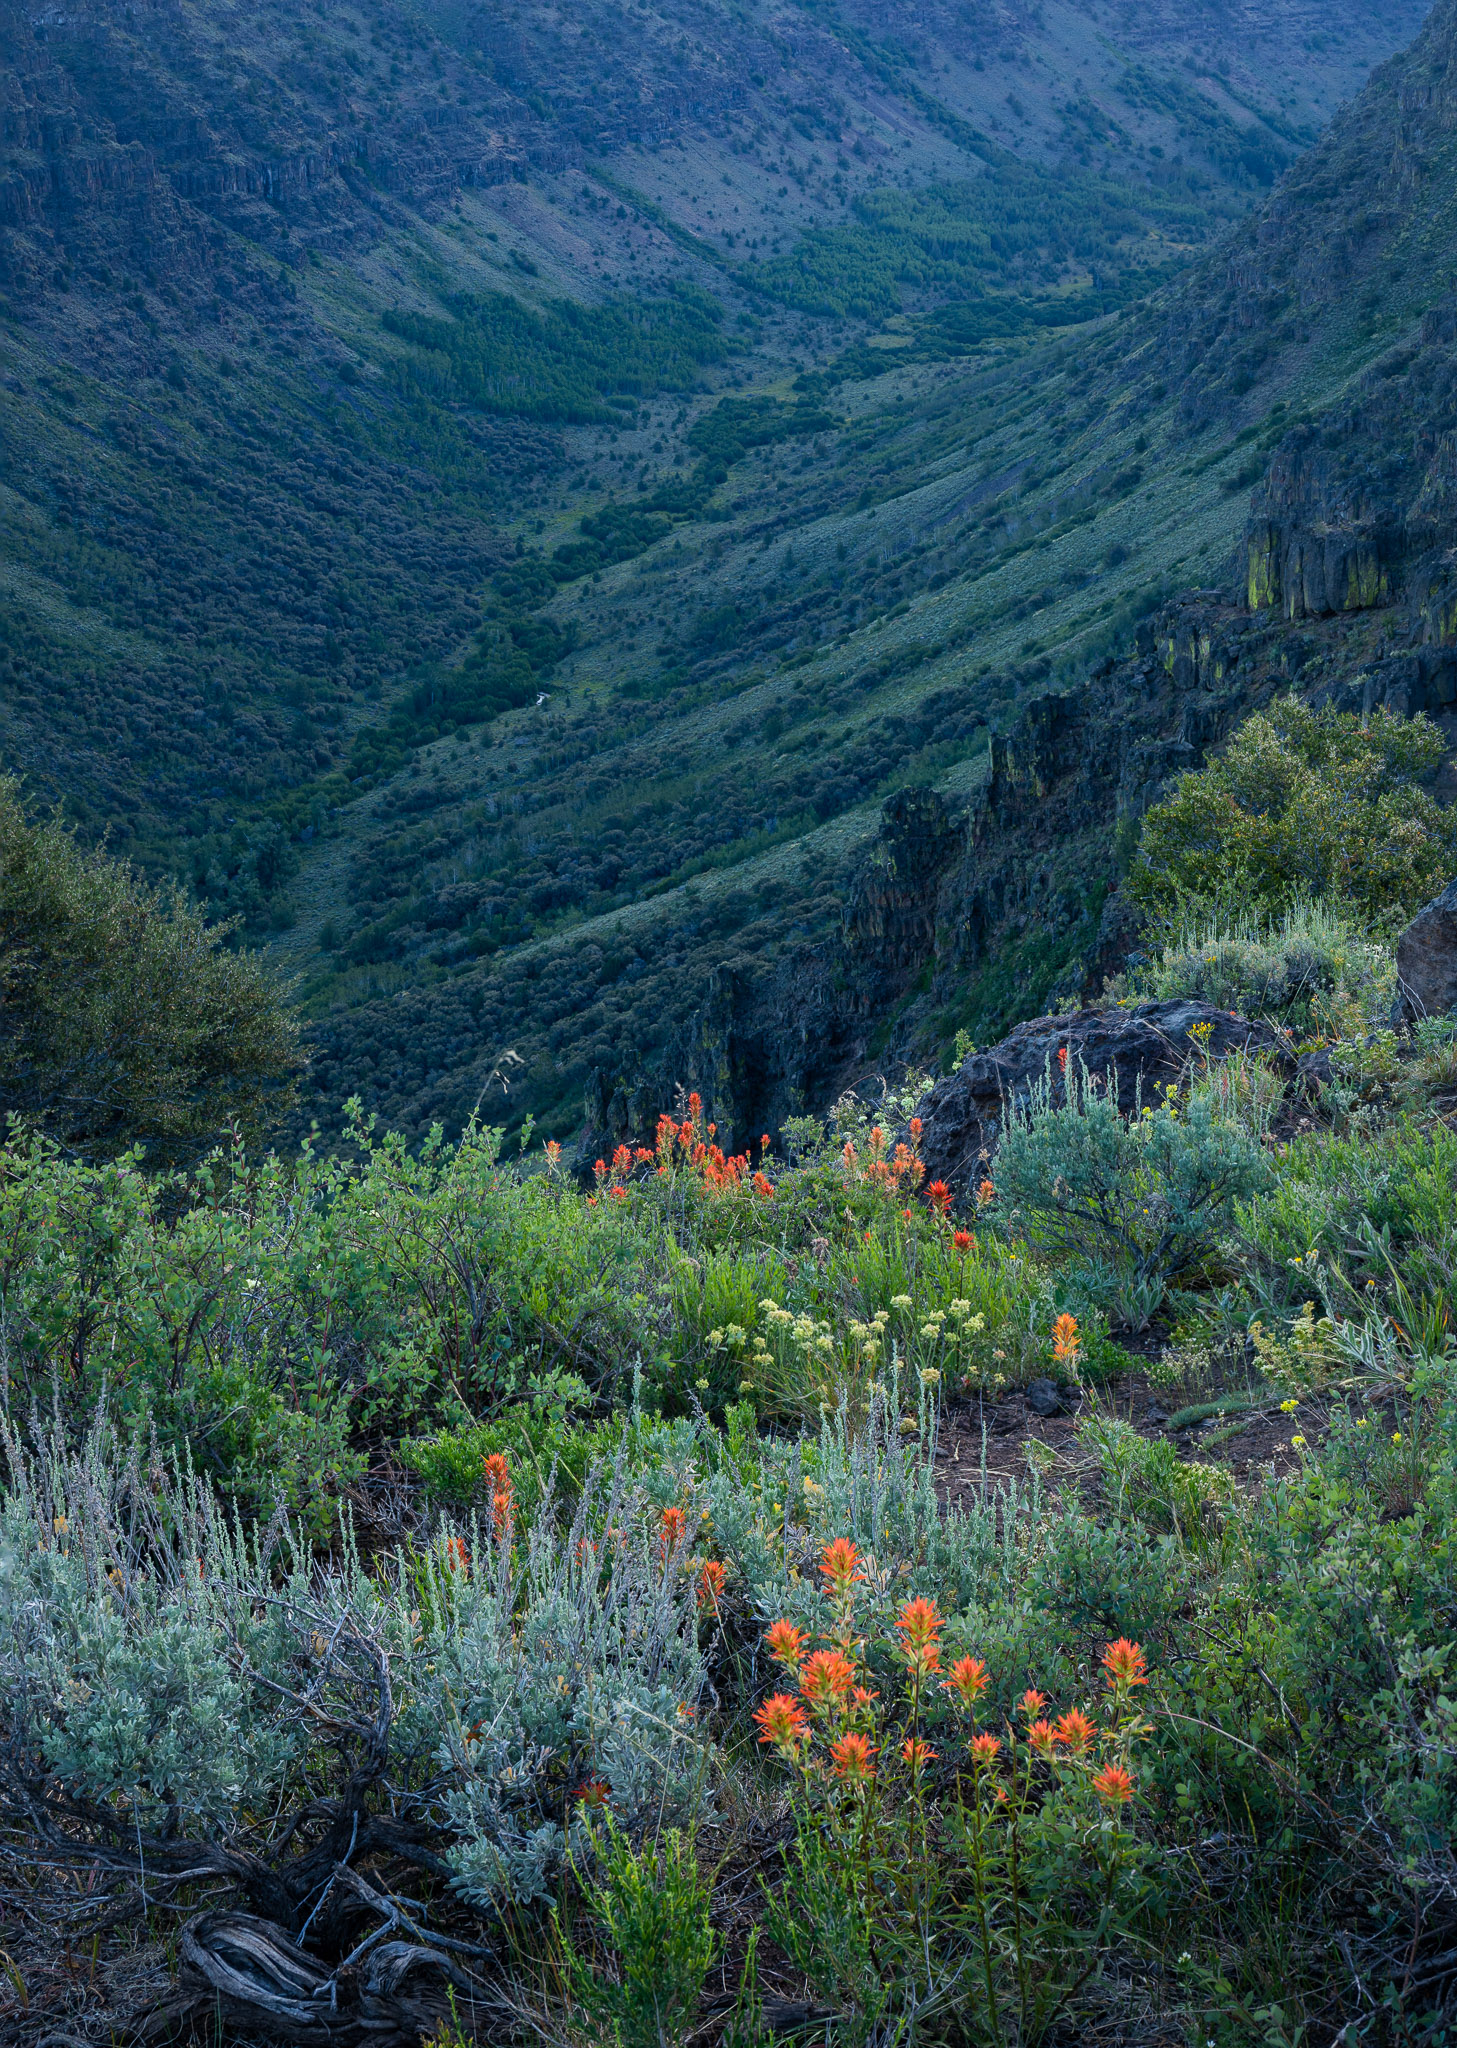 Wildflowers overlooking Little Blitzen Gorge